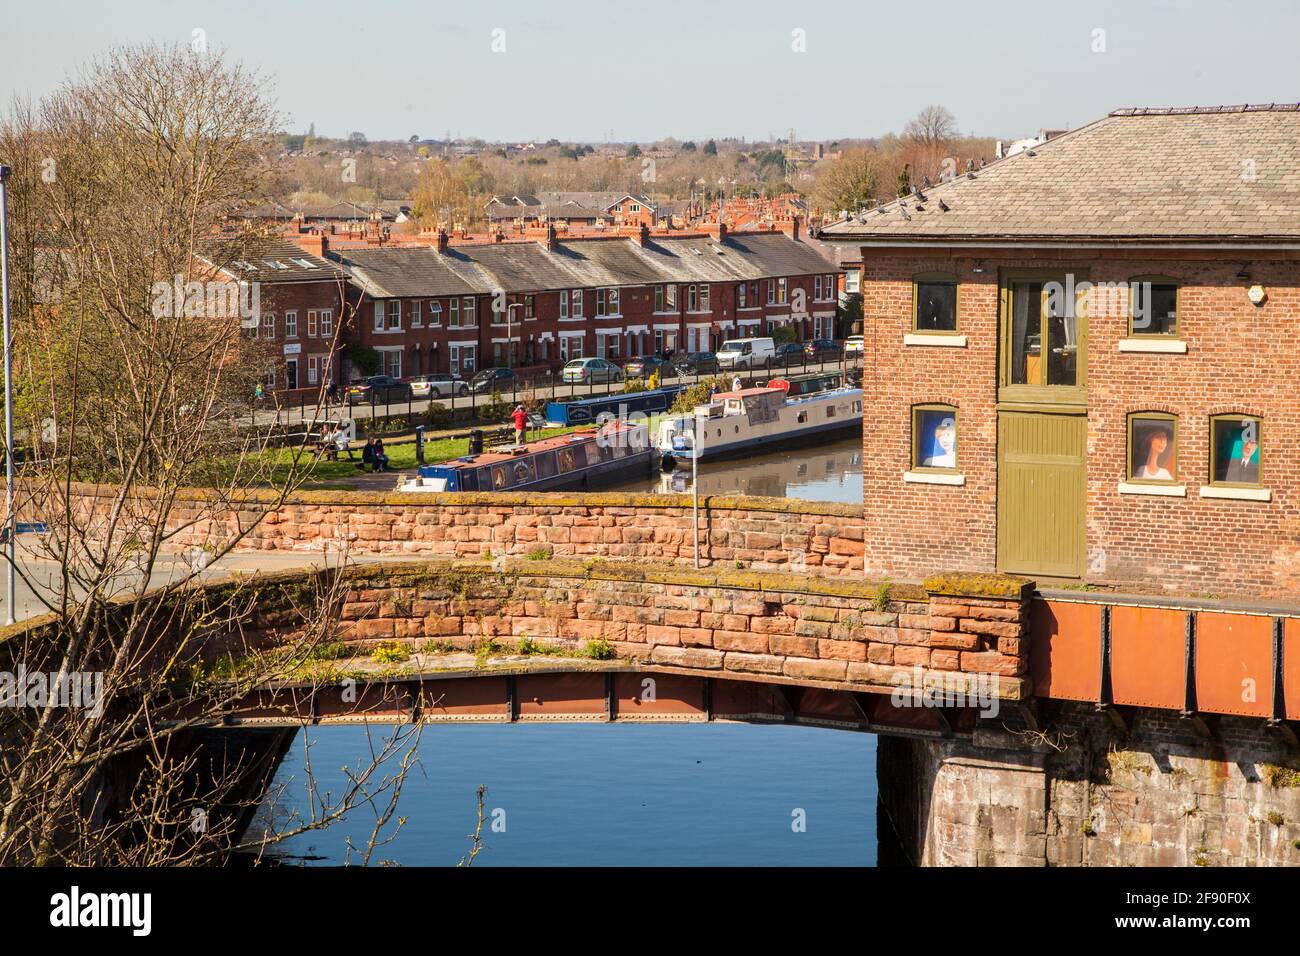 Telford's Warehouse sur le canal de Shropshire Union lorsqu'il passe Par la ville Cheshire de Chester Banque D'Images